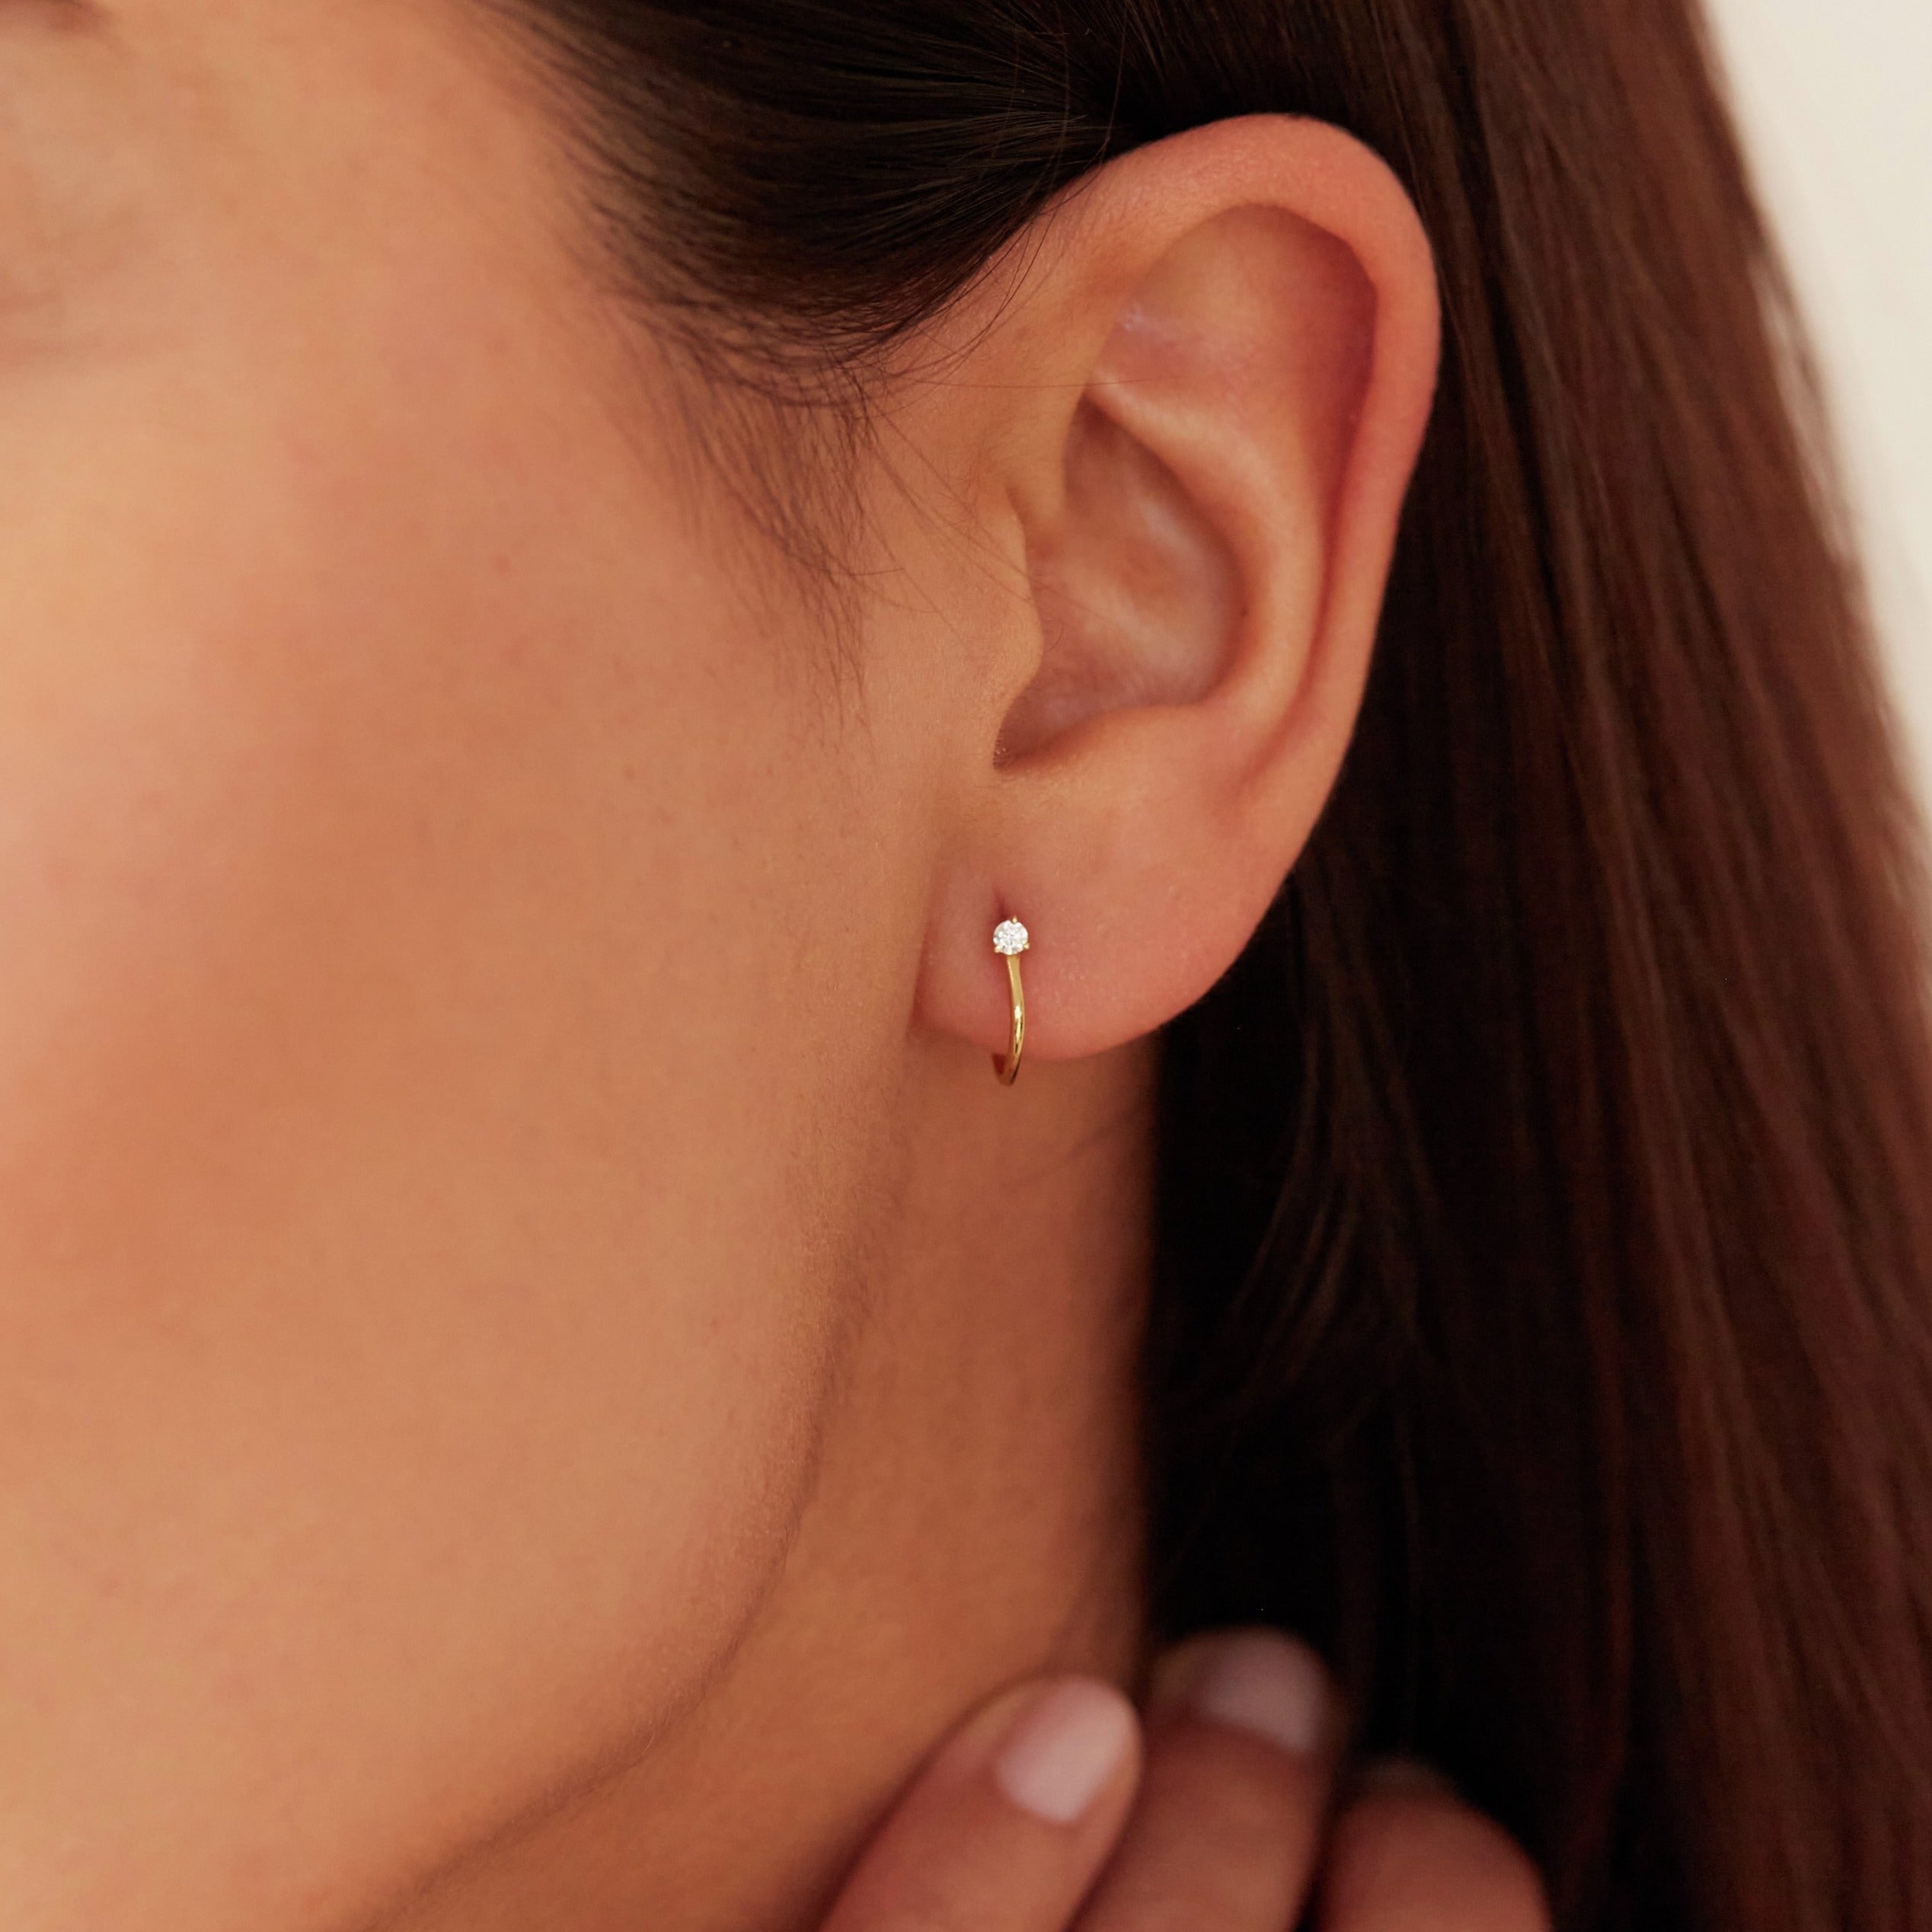 A gold diamond style lobe hoop stud earring in one ear lobe